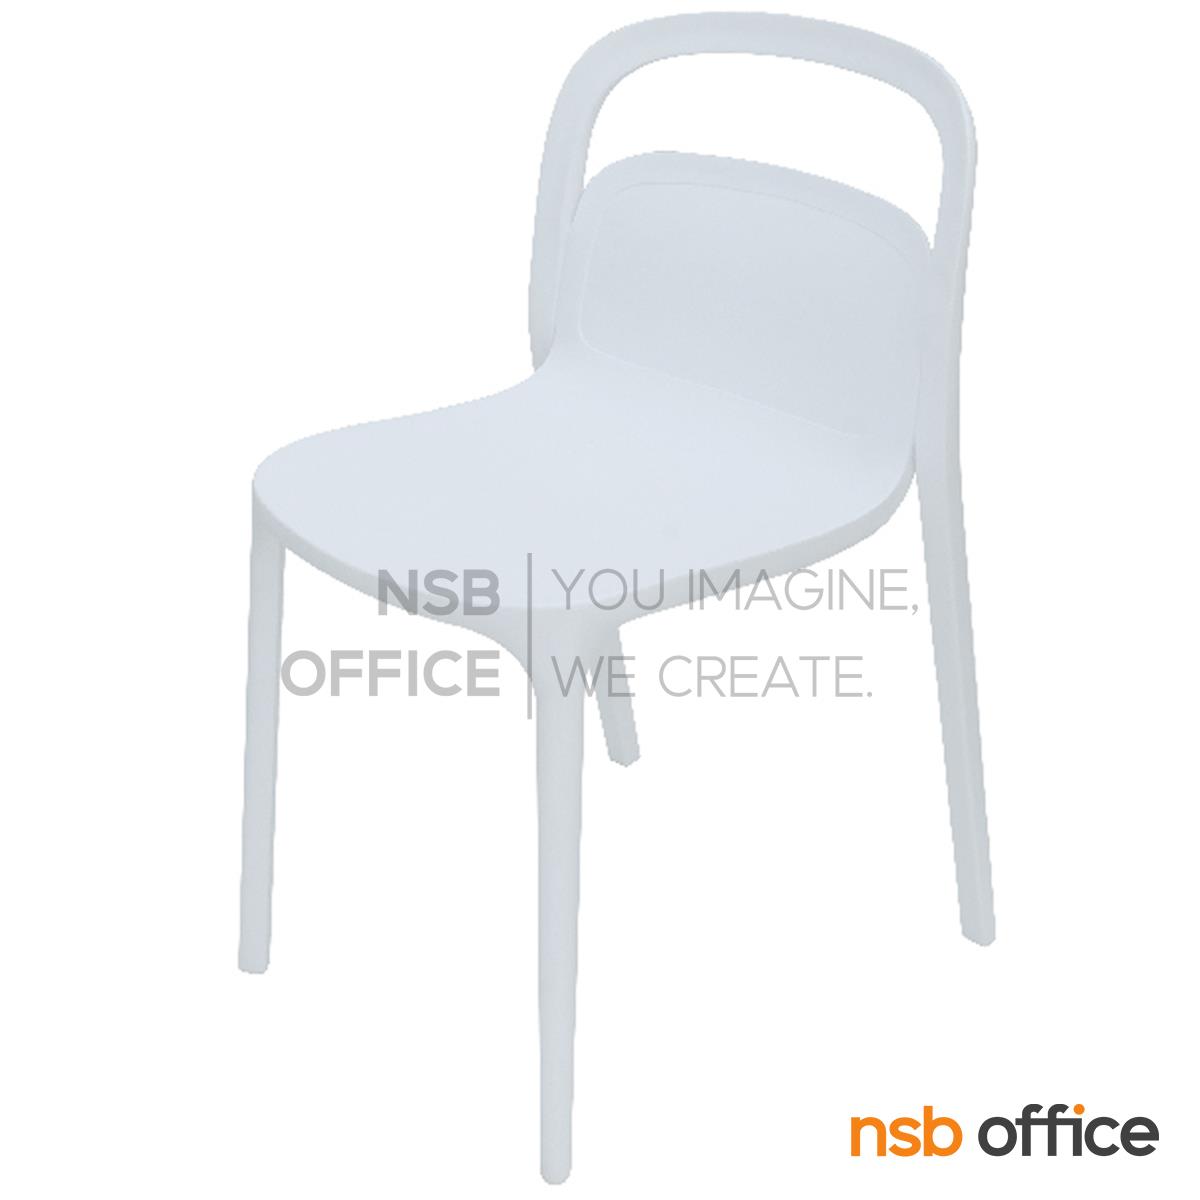 เก้าอี้โมเดิร์นพลาสติก PP รุ่น Nichell (นิเชลล์) ขนาด 47W cm.  